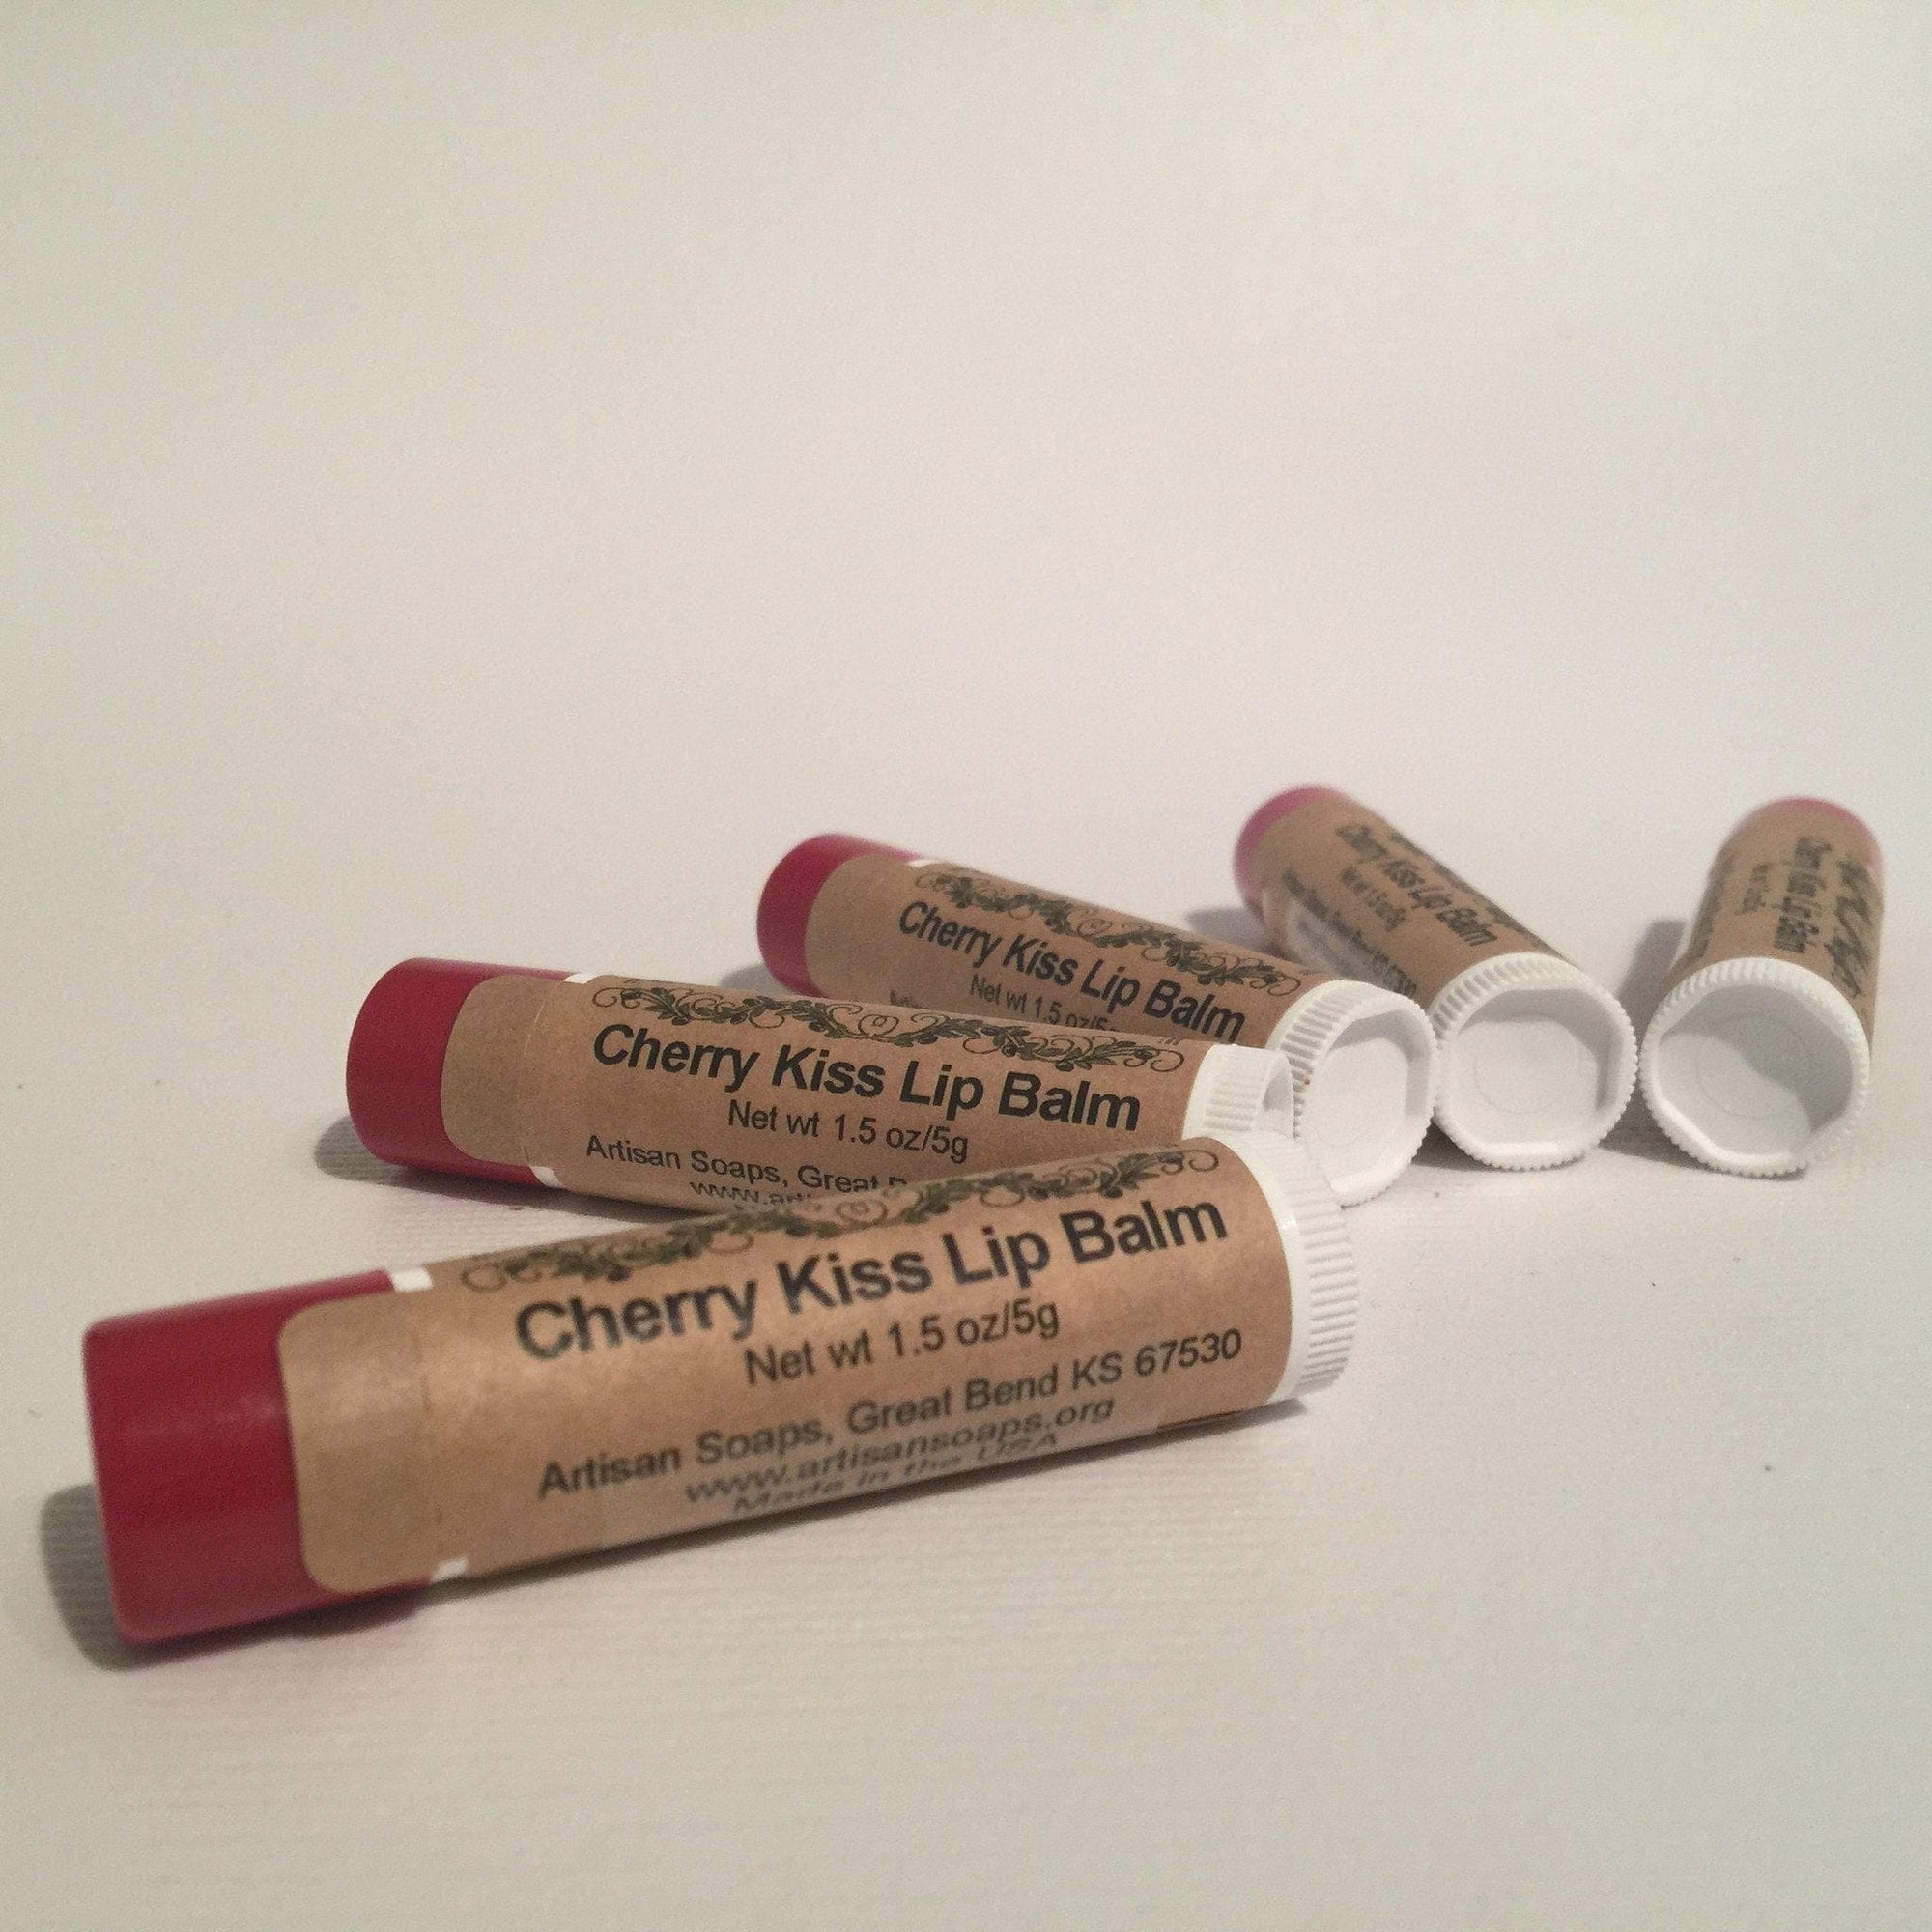 Cherry Kiss Lip Balm - Artisan Soaps